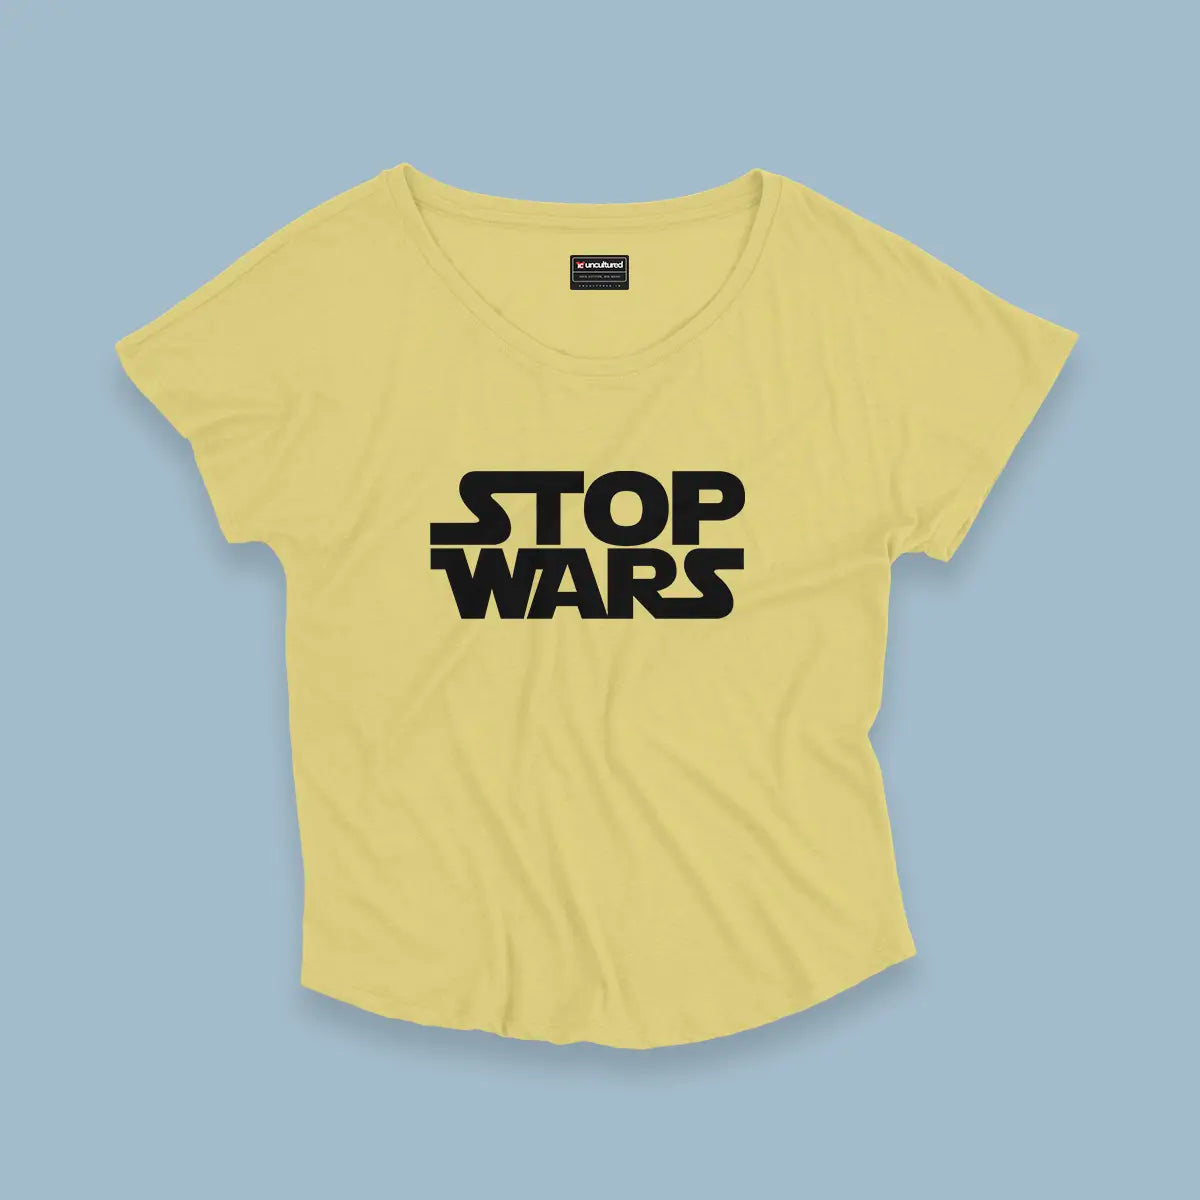 Stop wars - Croptop